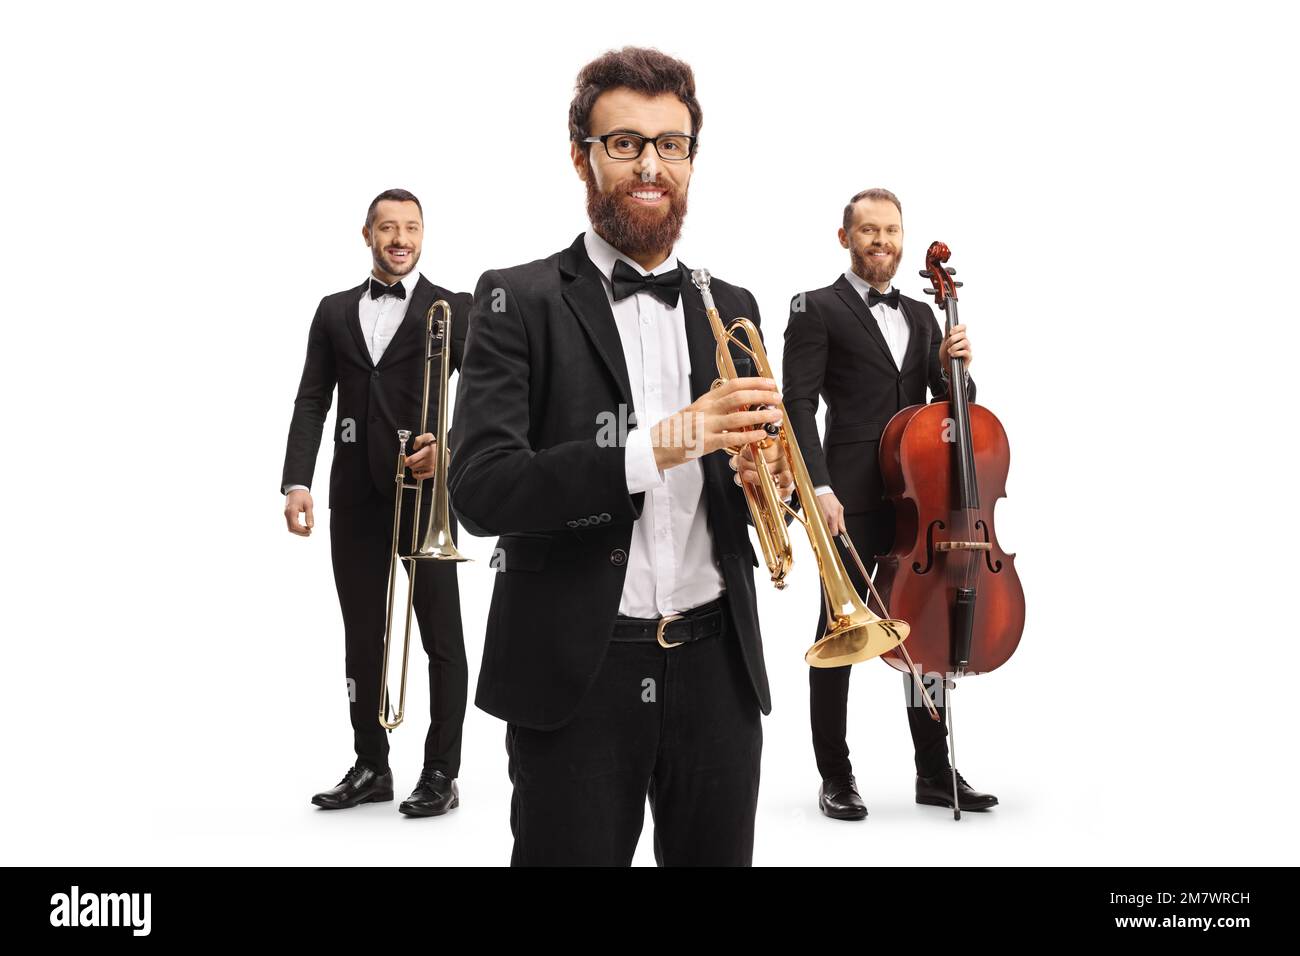 Musiciens masculins élégants avec trombone, trompette et violoncelle isolés sur fond blanc Banque D'Images